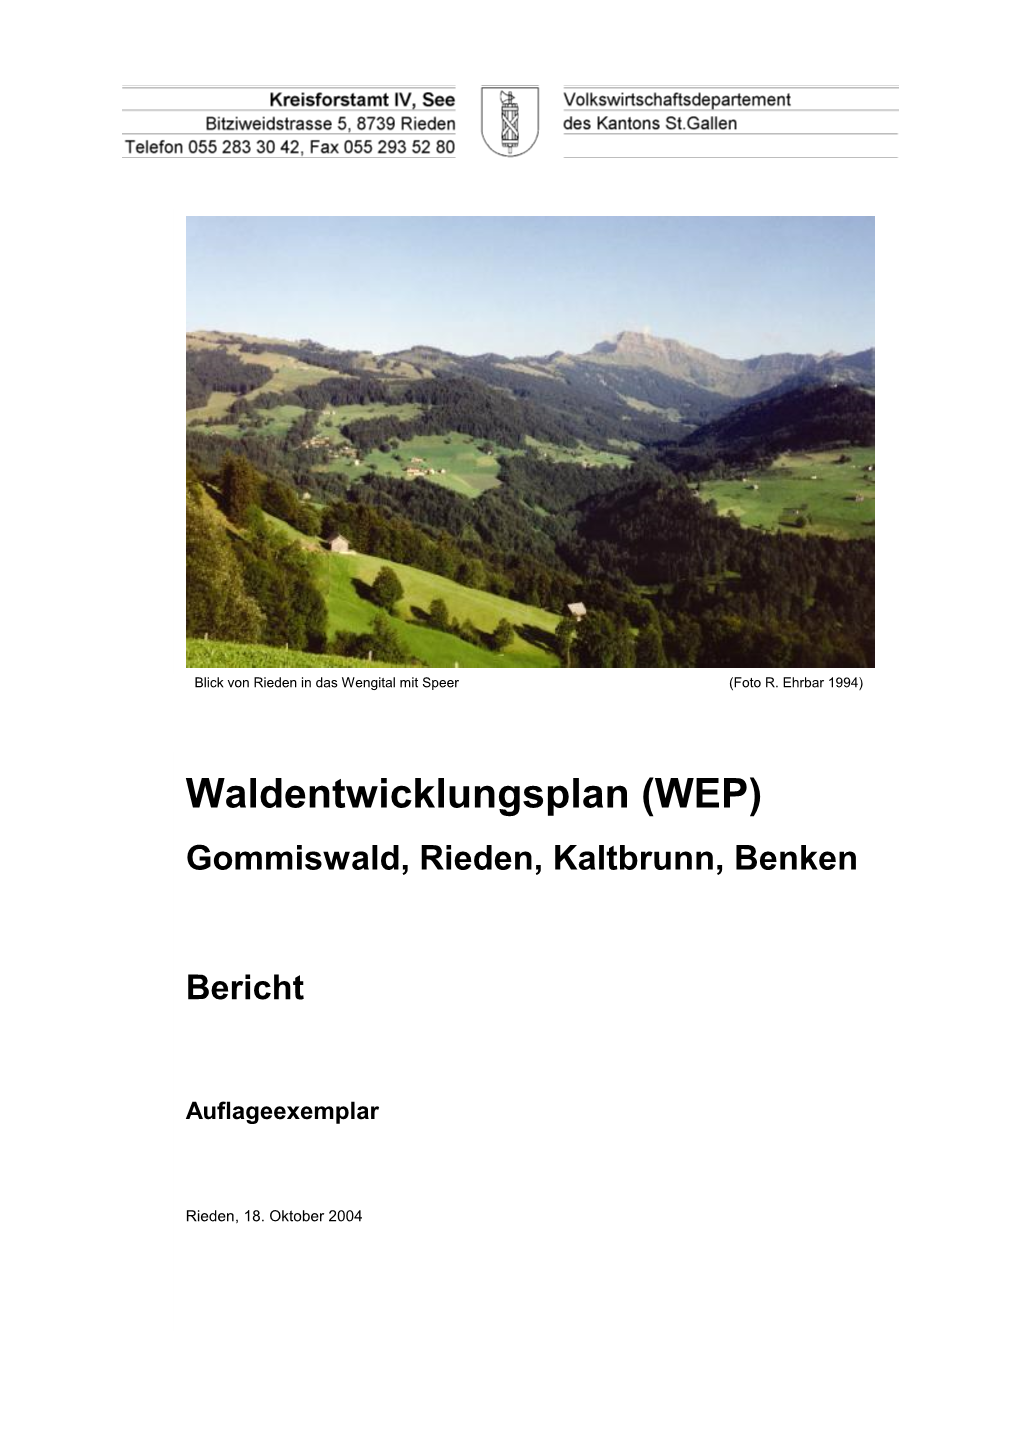 Waldentwicklungsplan (WEP) Gommiswald, Rieden, Kaltbrunn, Benken